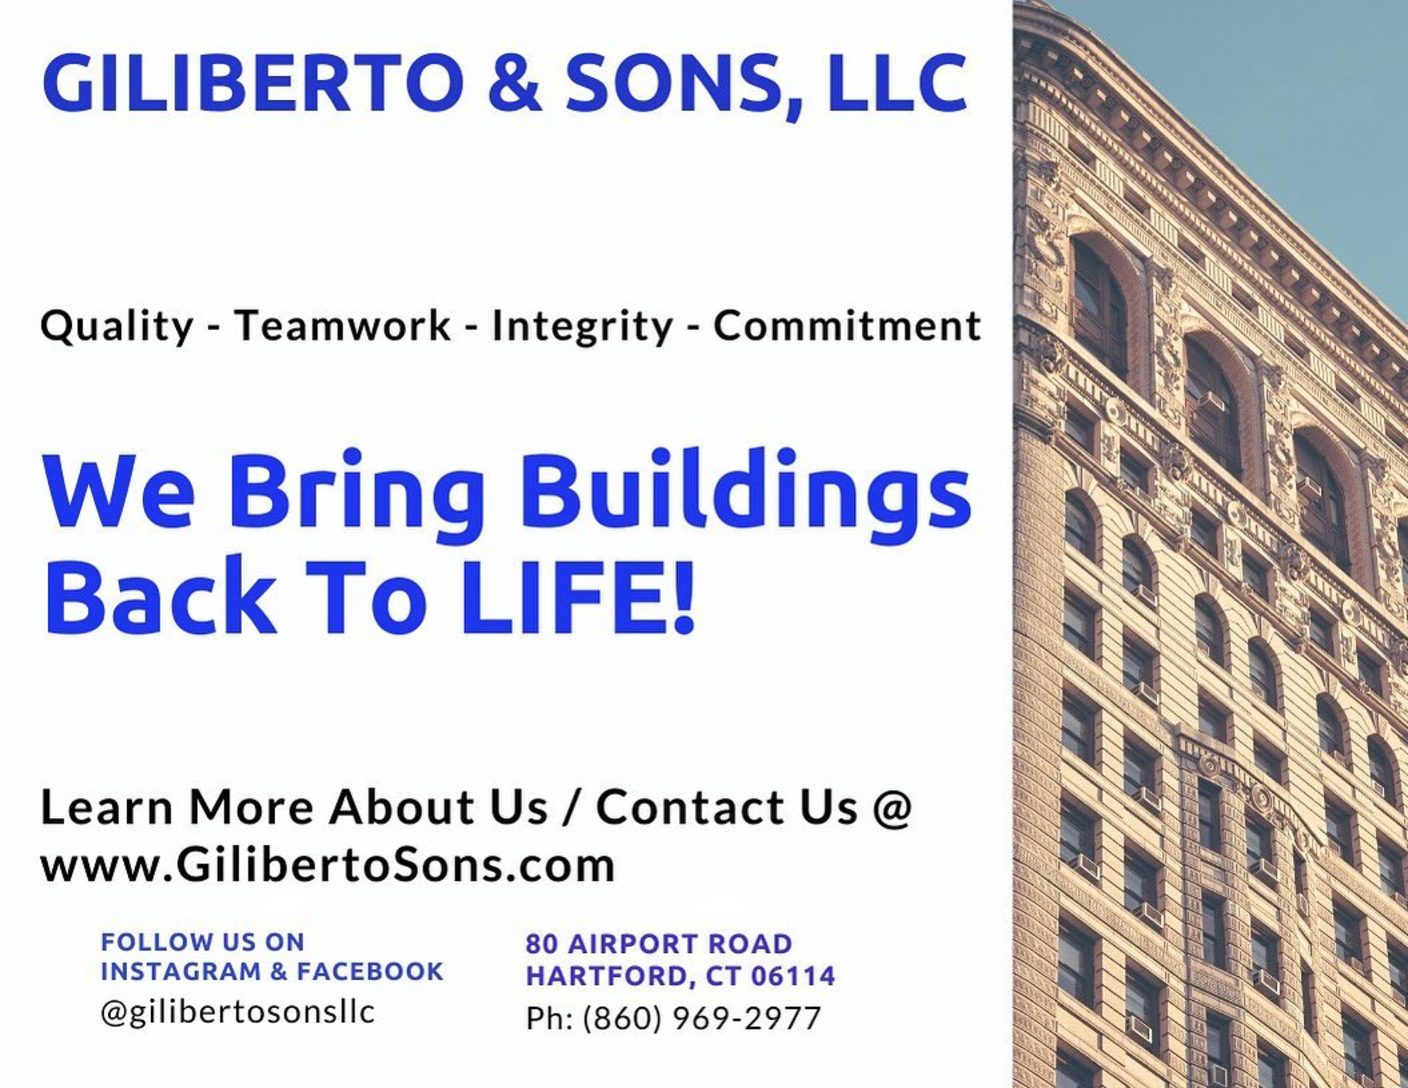 Giliberto & Sons, LLC